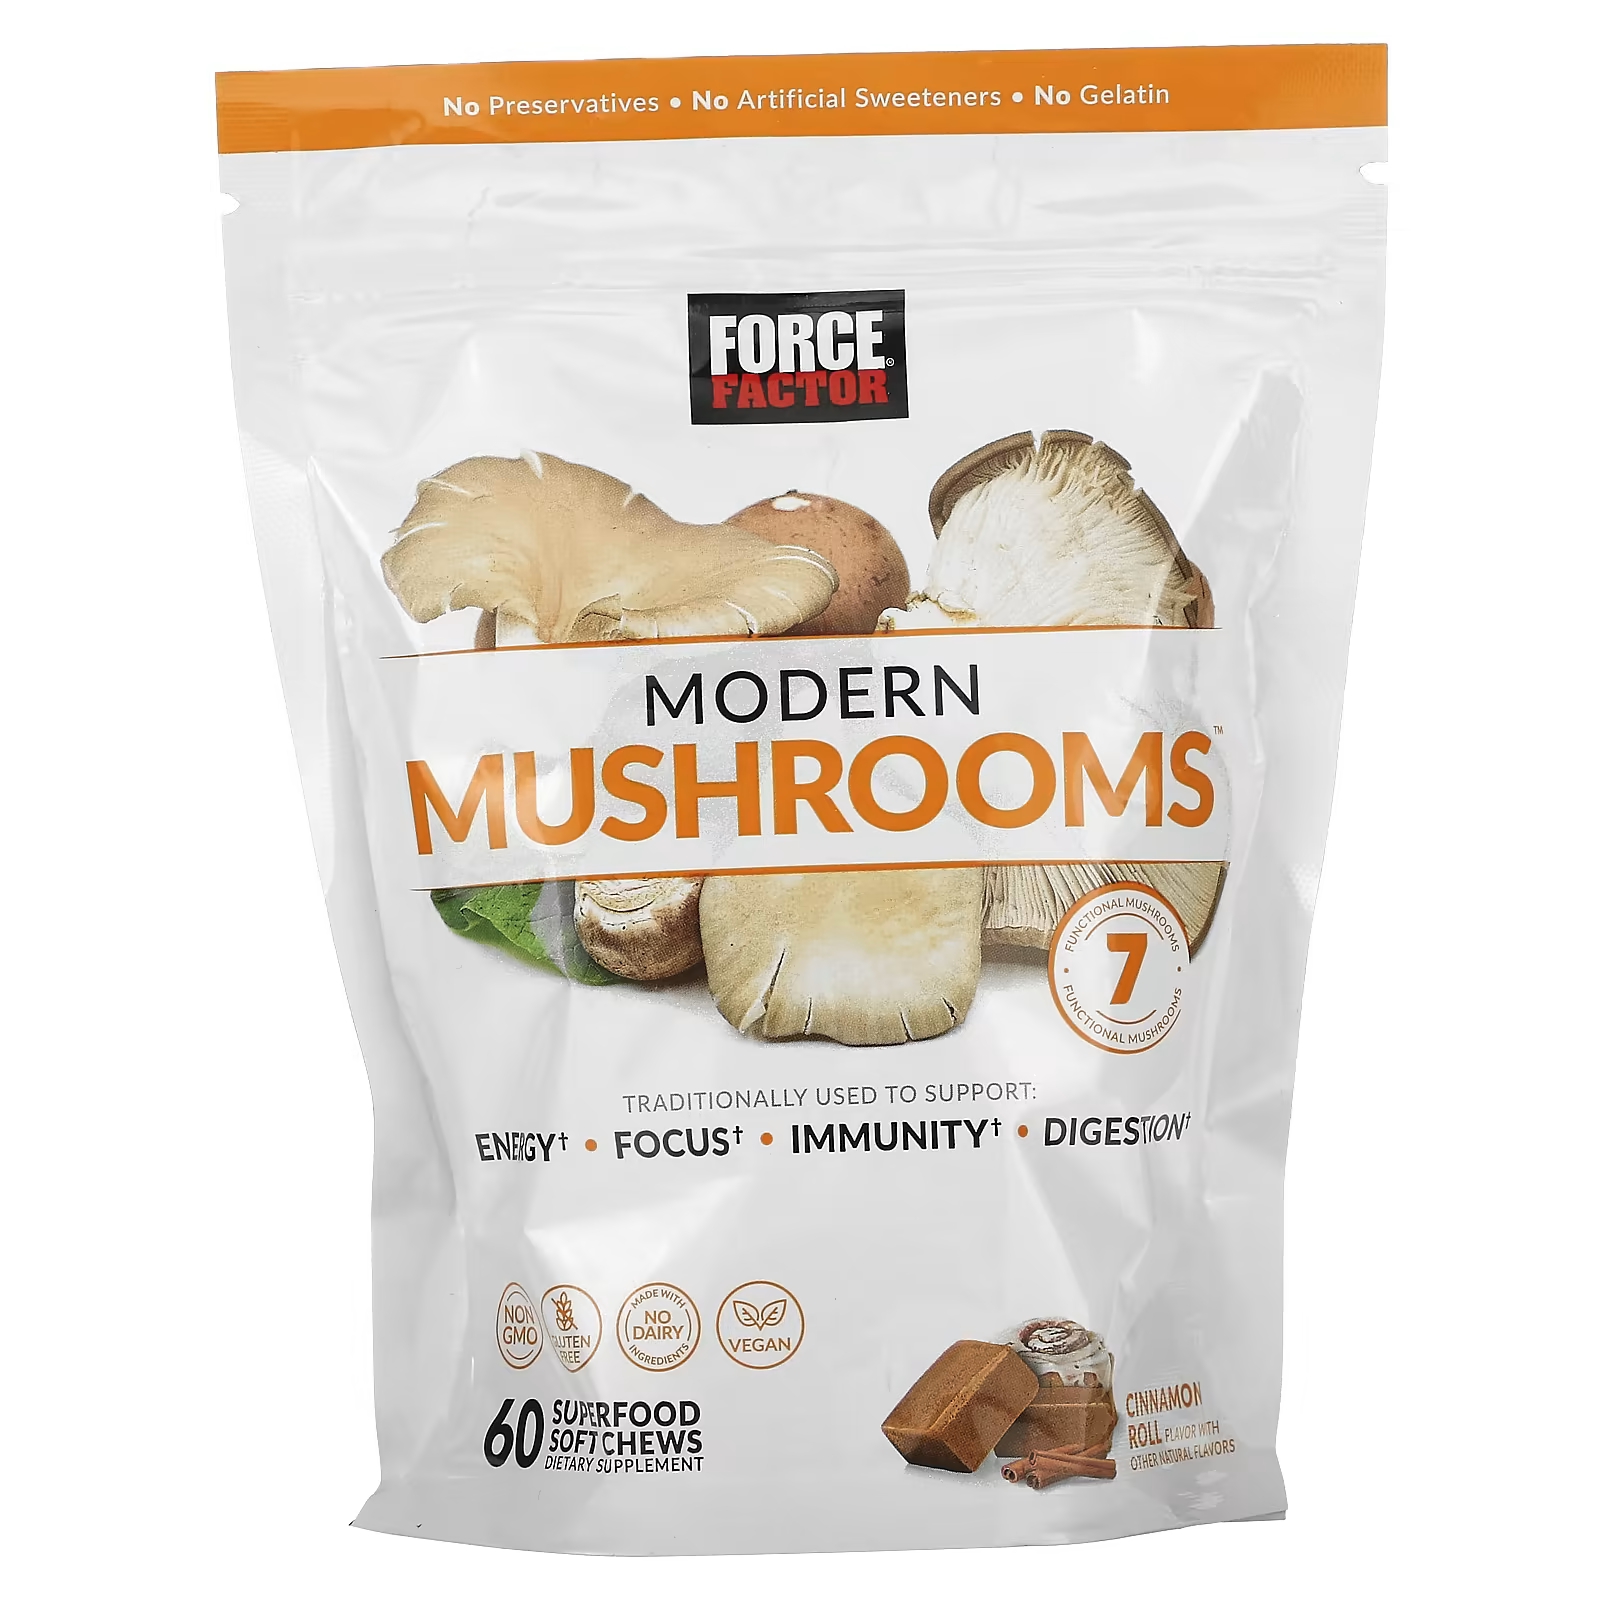 Force Factor Modern Mushrooms булочка с корицей, 60 мягких жевательных конфет